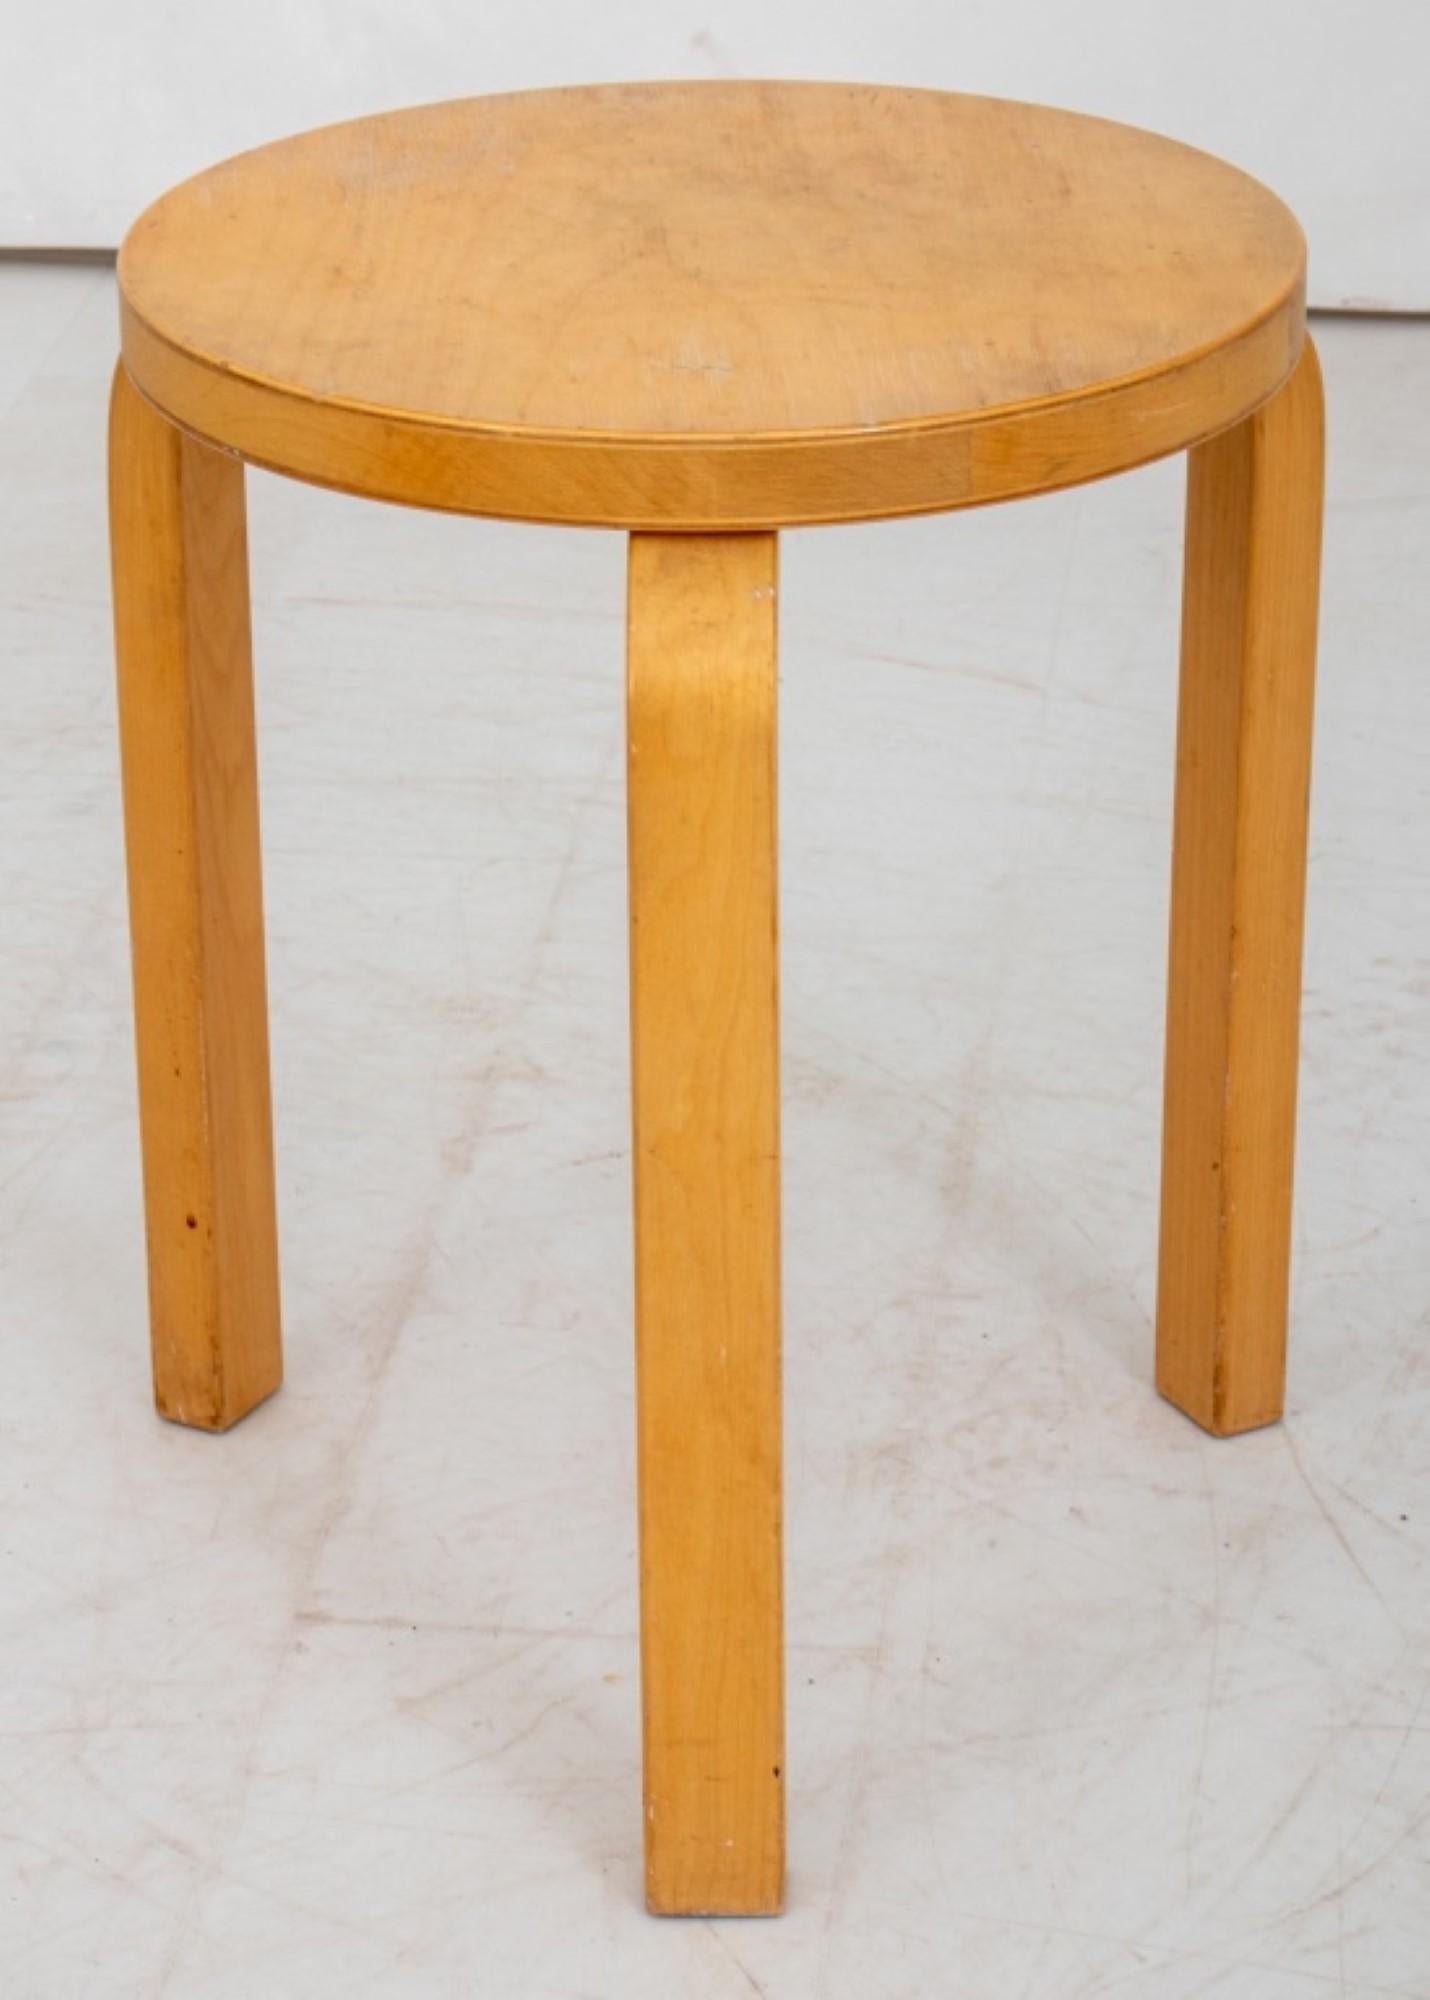 20th Century Alvar Aalto for Artek Style Maple Stool For Sale